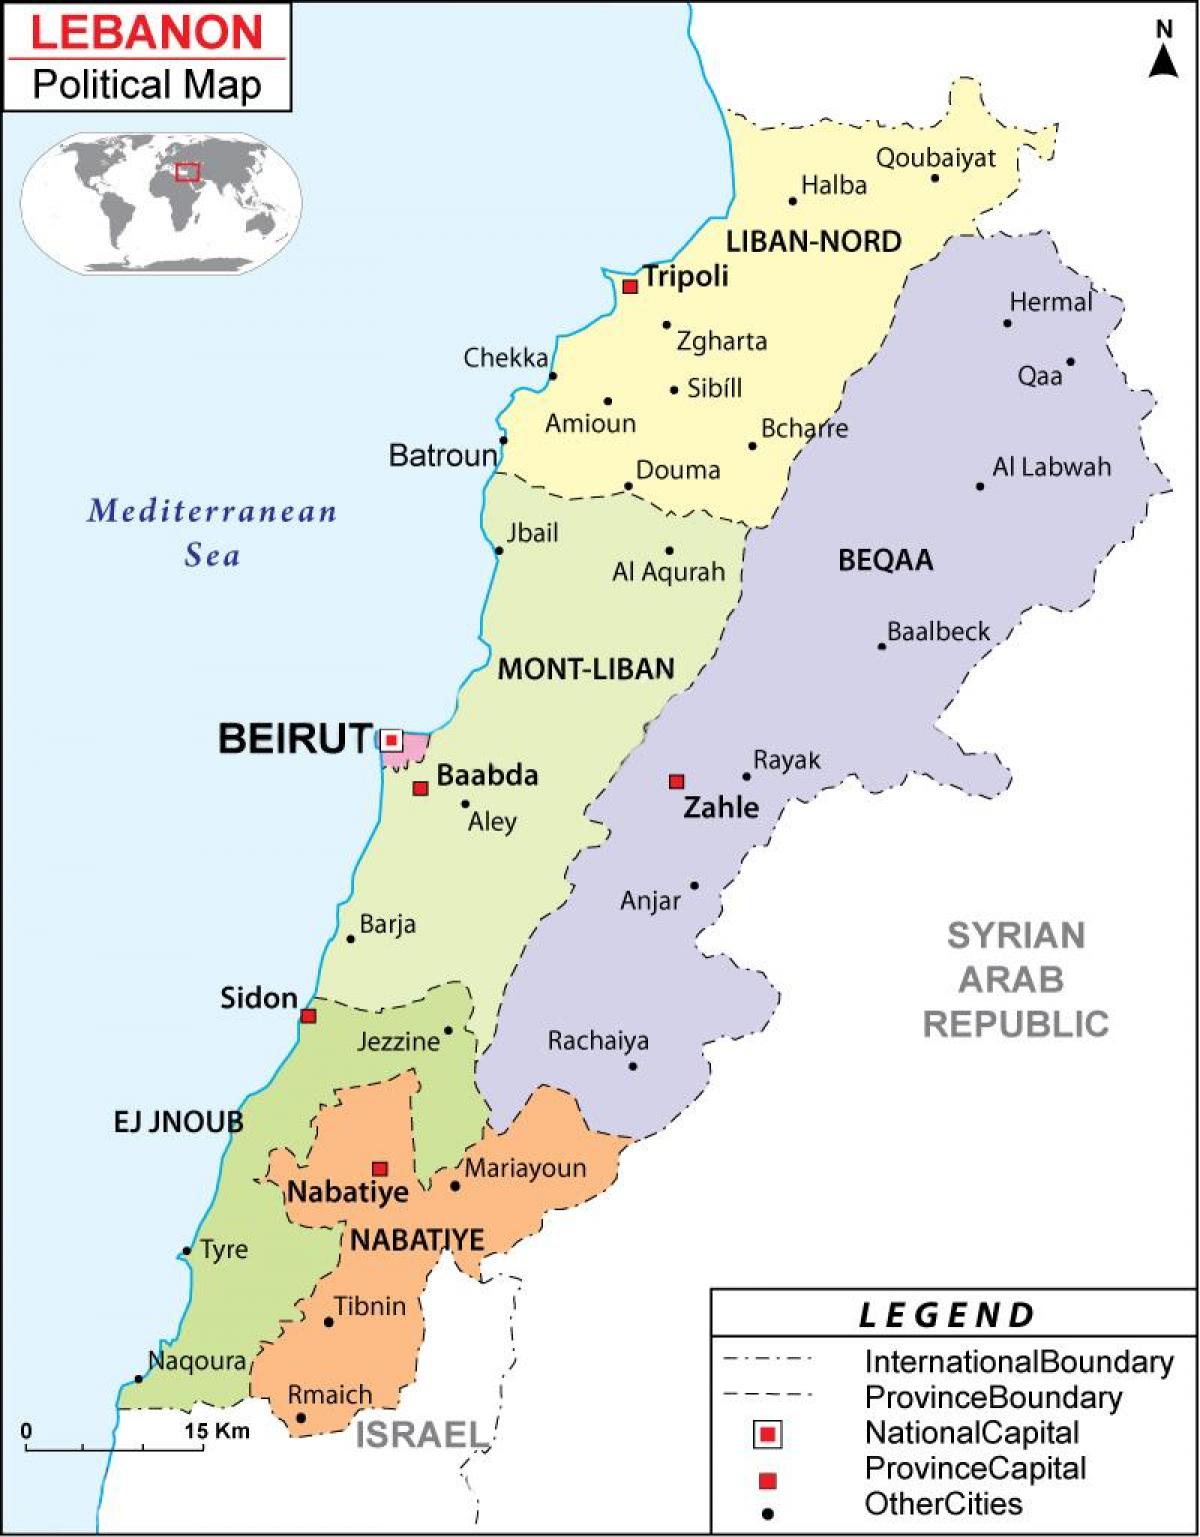 نقشه سیاسی لبنان